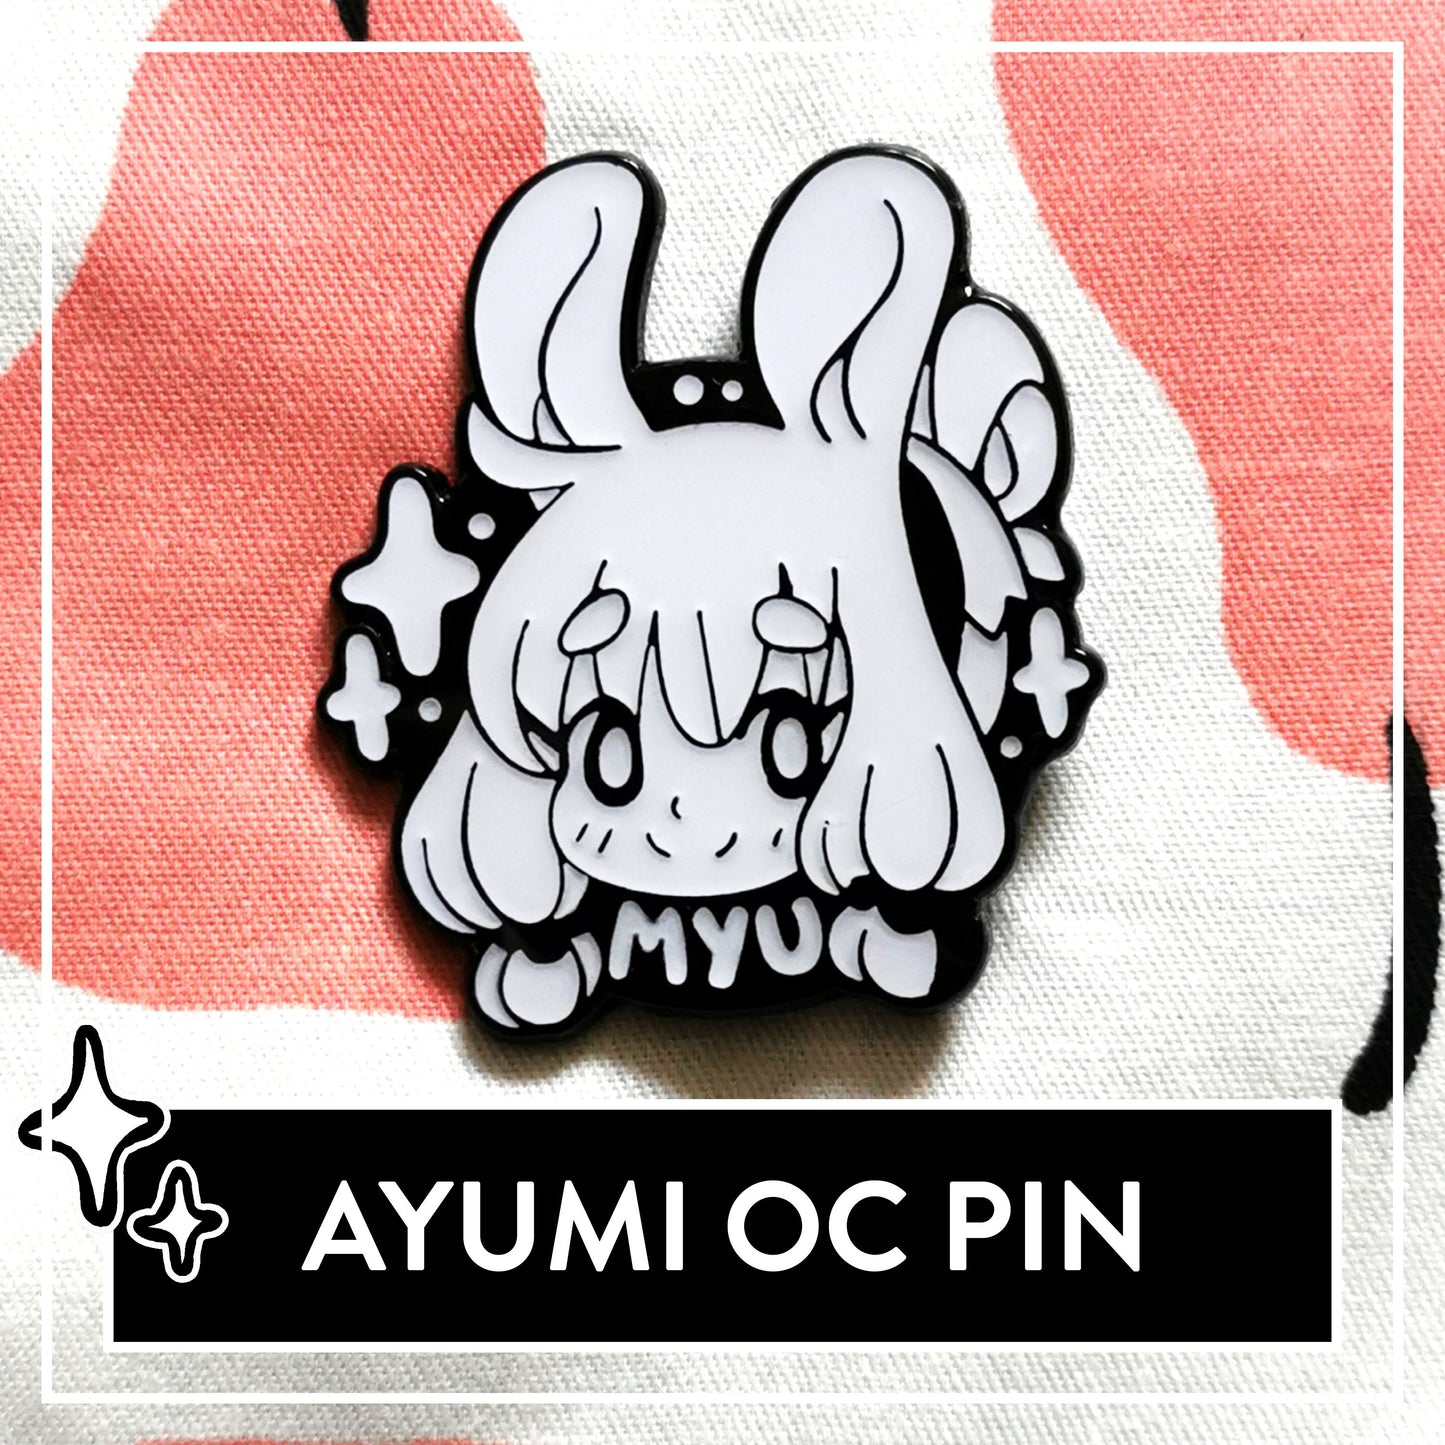 Ayumi OC Hard Enamel Pin - Cute Original Art Pin + Pin Saver (optional)